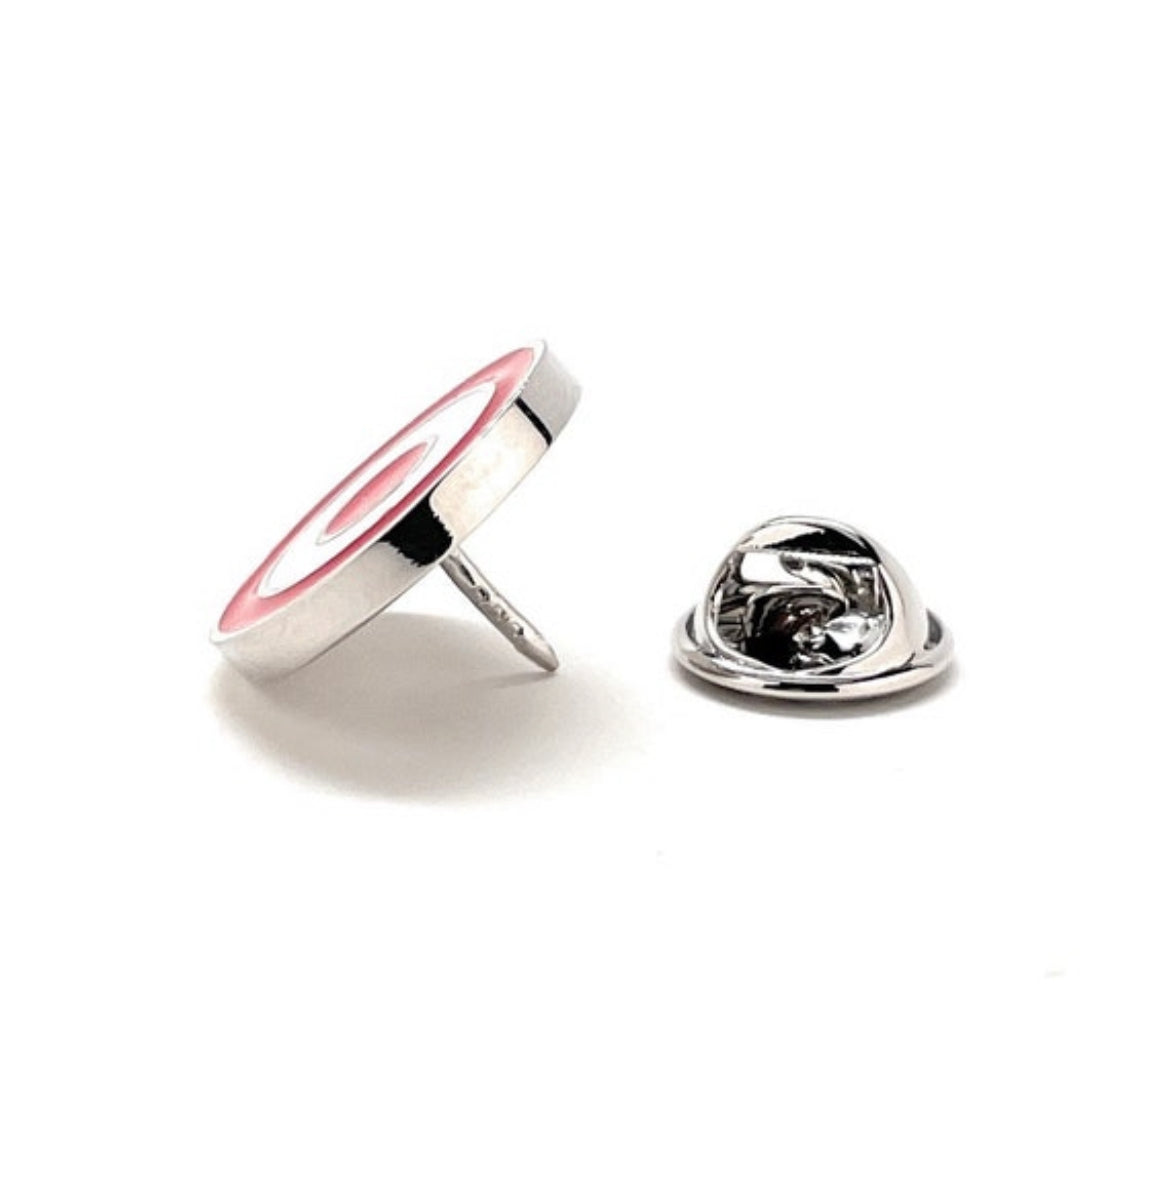 Bullseye Lapel Pin Red and White Target Enamel Pin Lanyard Pin Tie Tack 3D Design Silver Trim